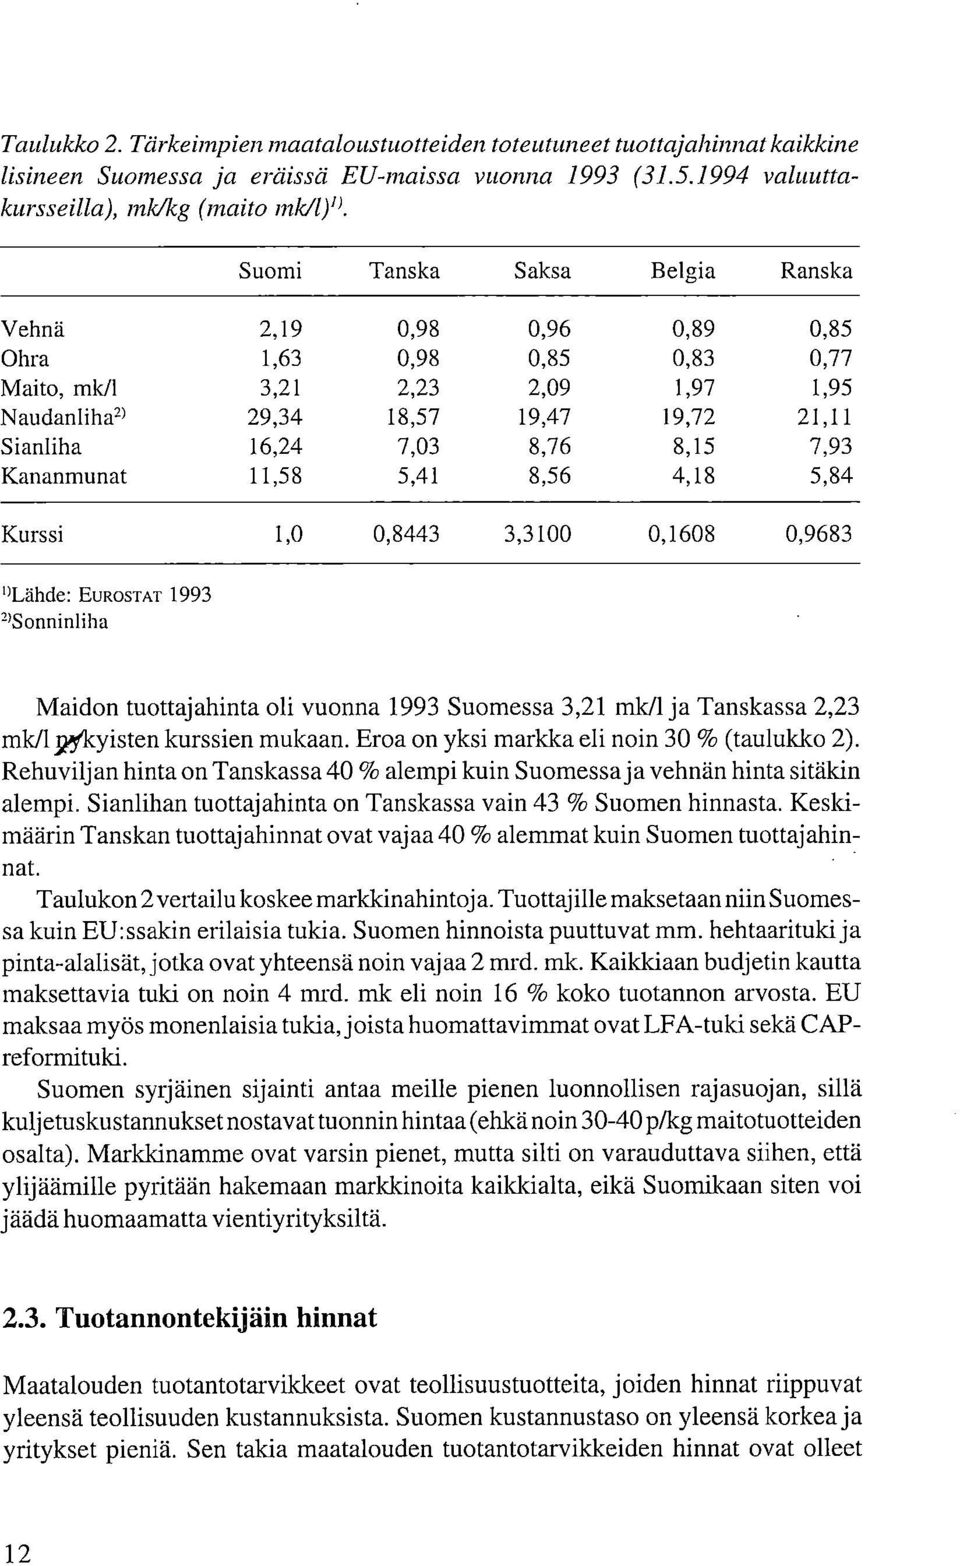 8,15 7,93 Kananmunat 11,58 5,41 8,56 4,18 5,84 Kurssi 1,0 0,8443 3,3100 0,1608 0,9683 'Lähde: EUROSTAT 1993 2)Sonninliha Maidon tuottajahinta oli vuonna 1993 Suomessa 3,21 mk/1 ja Tanskassa 2,23